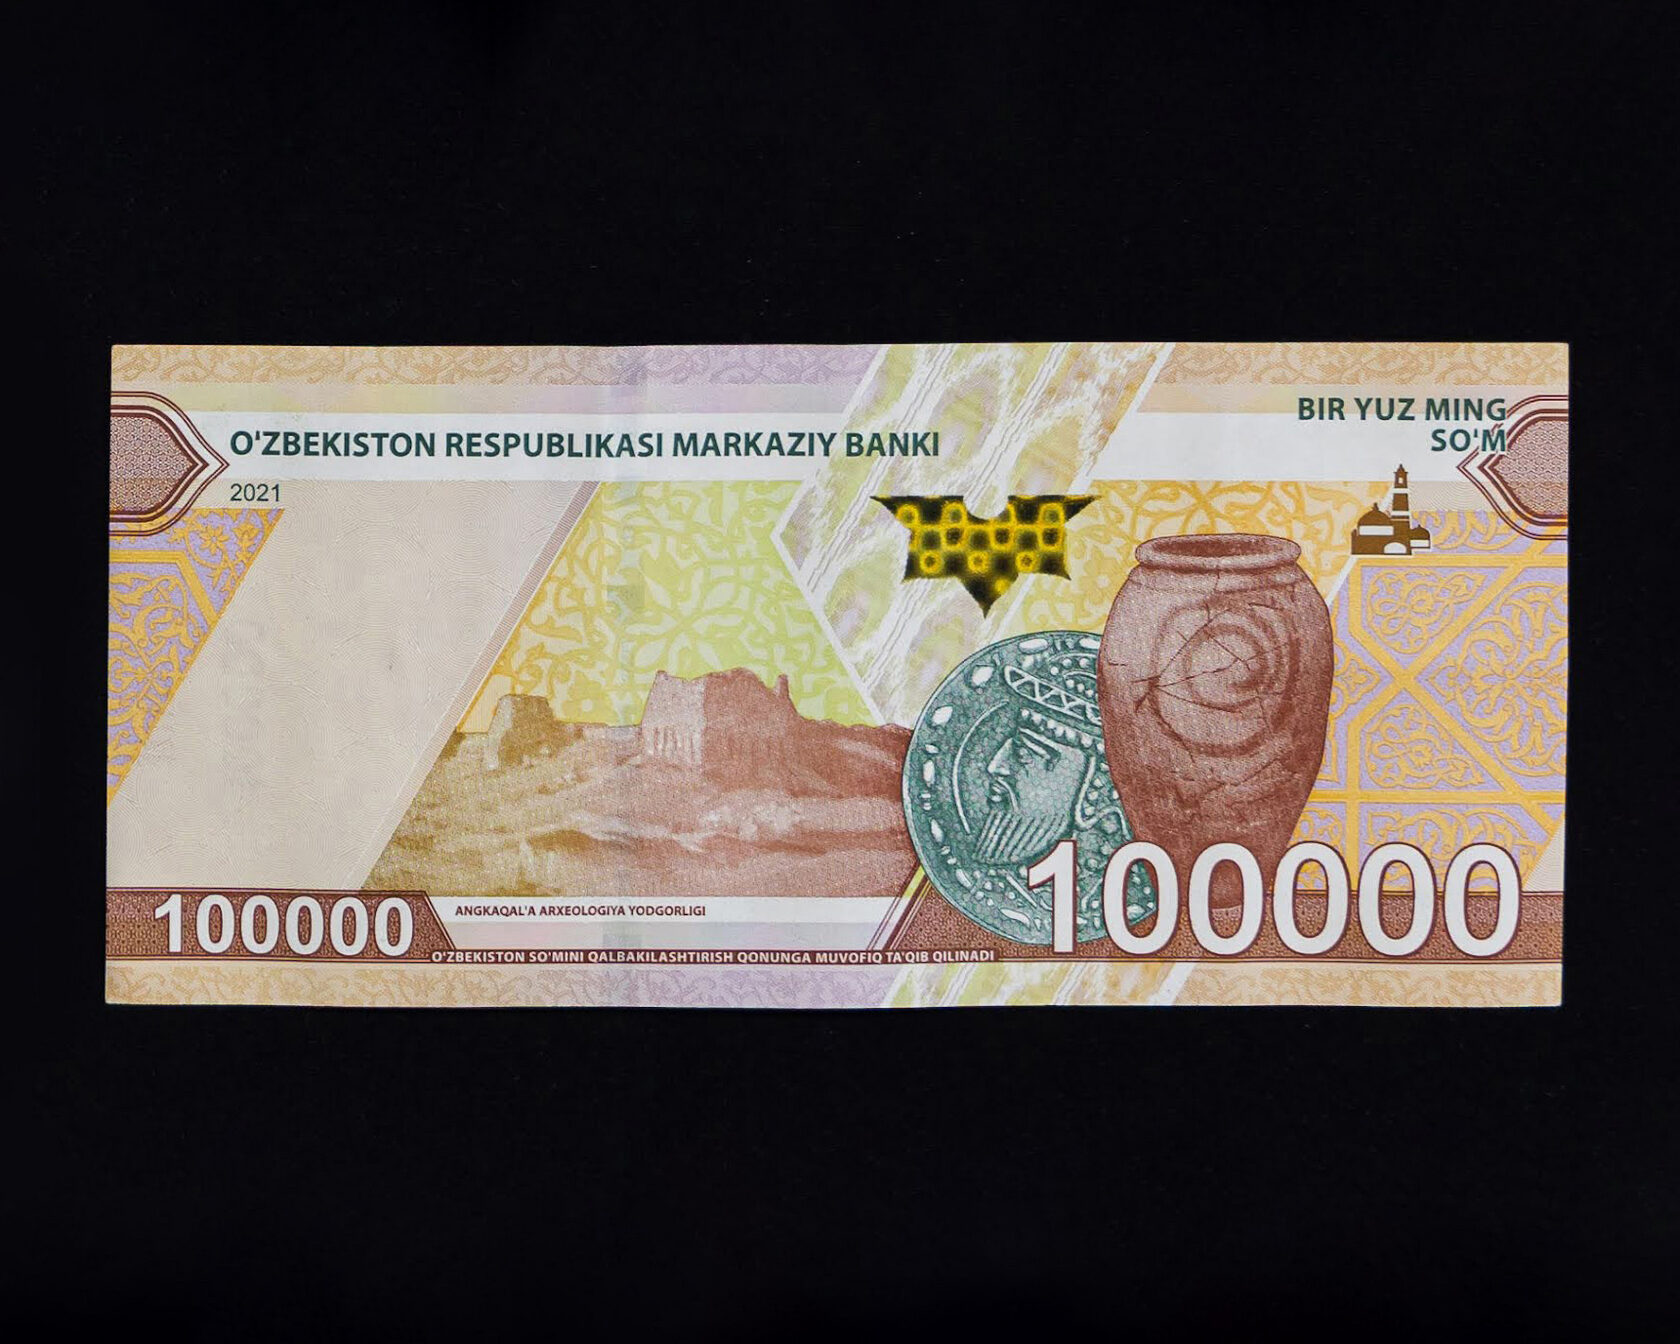 100 долларов в сум узбекистан